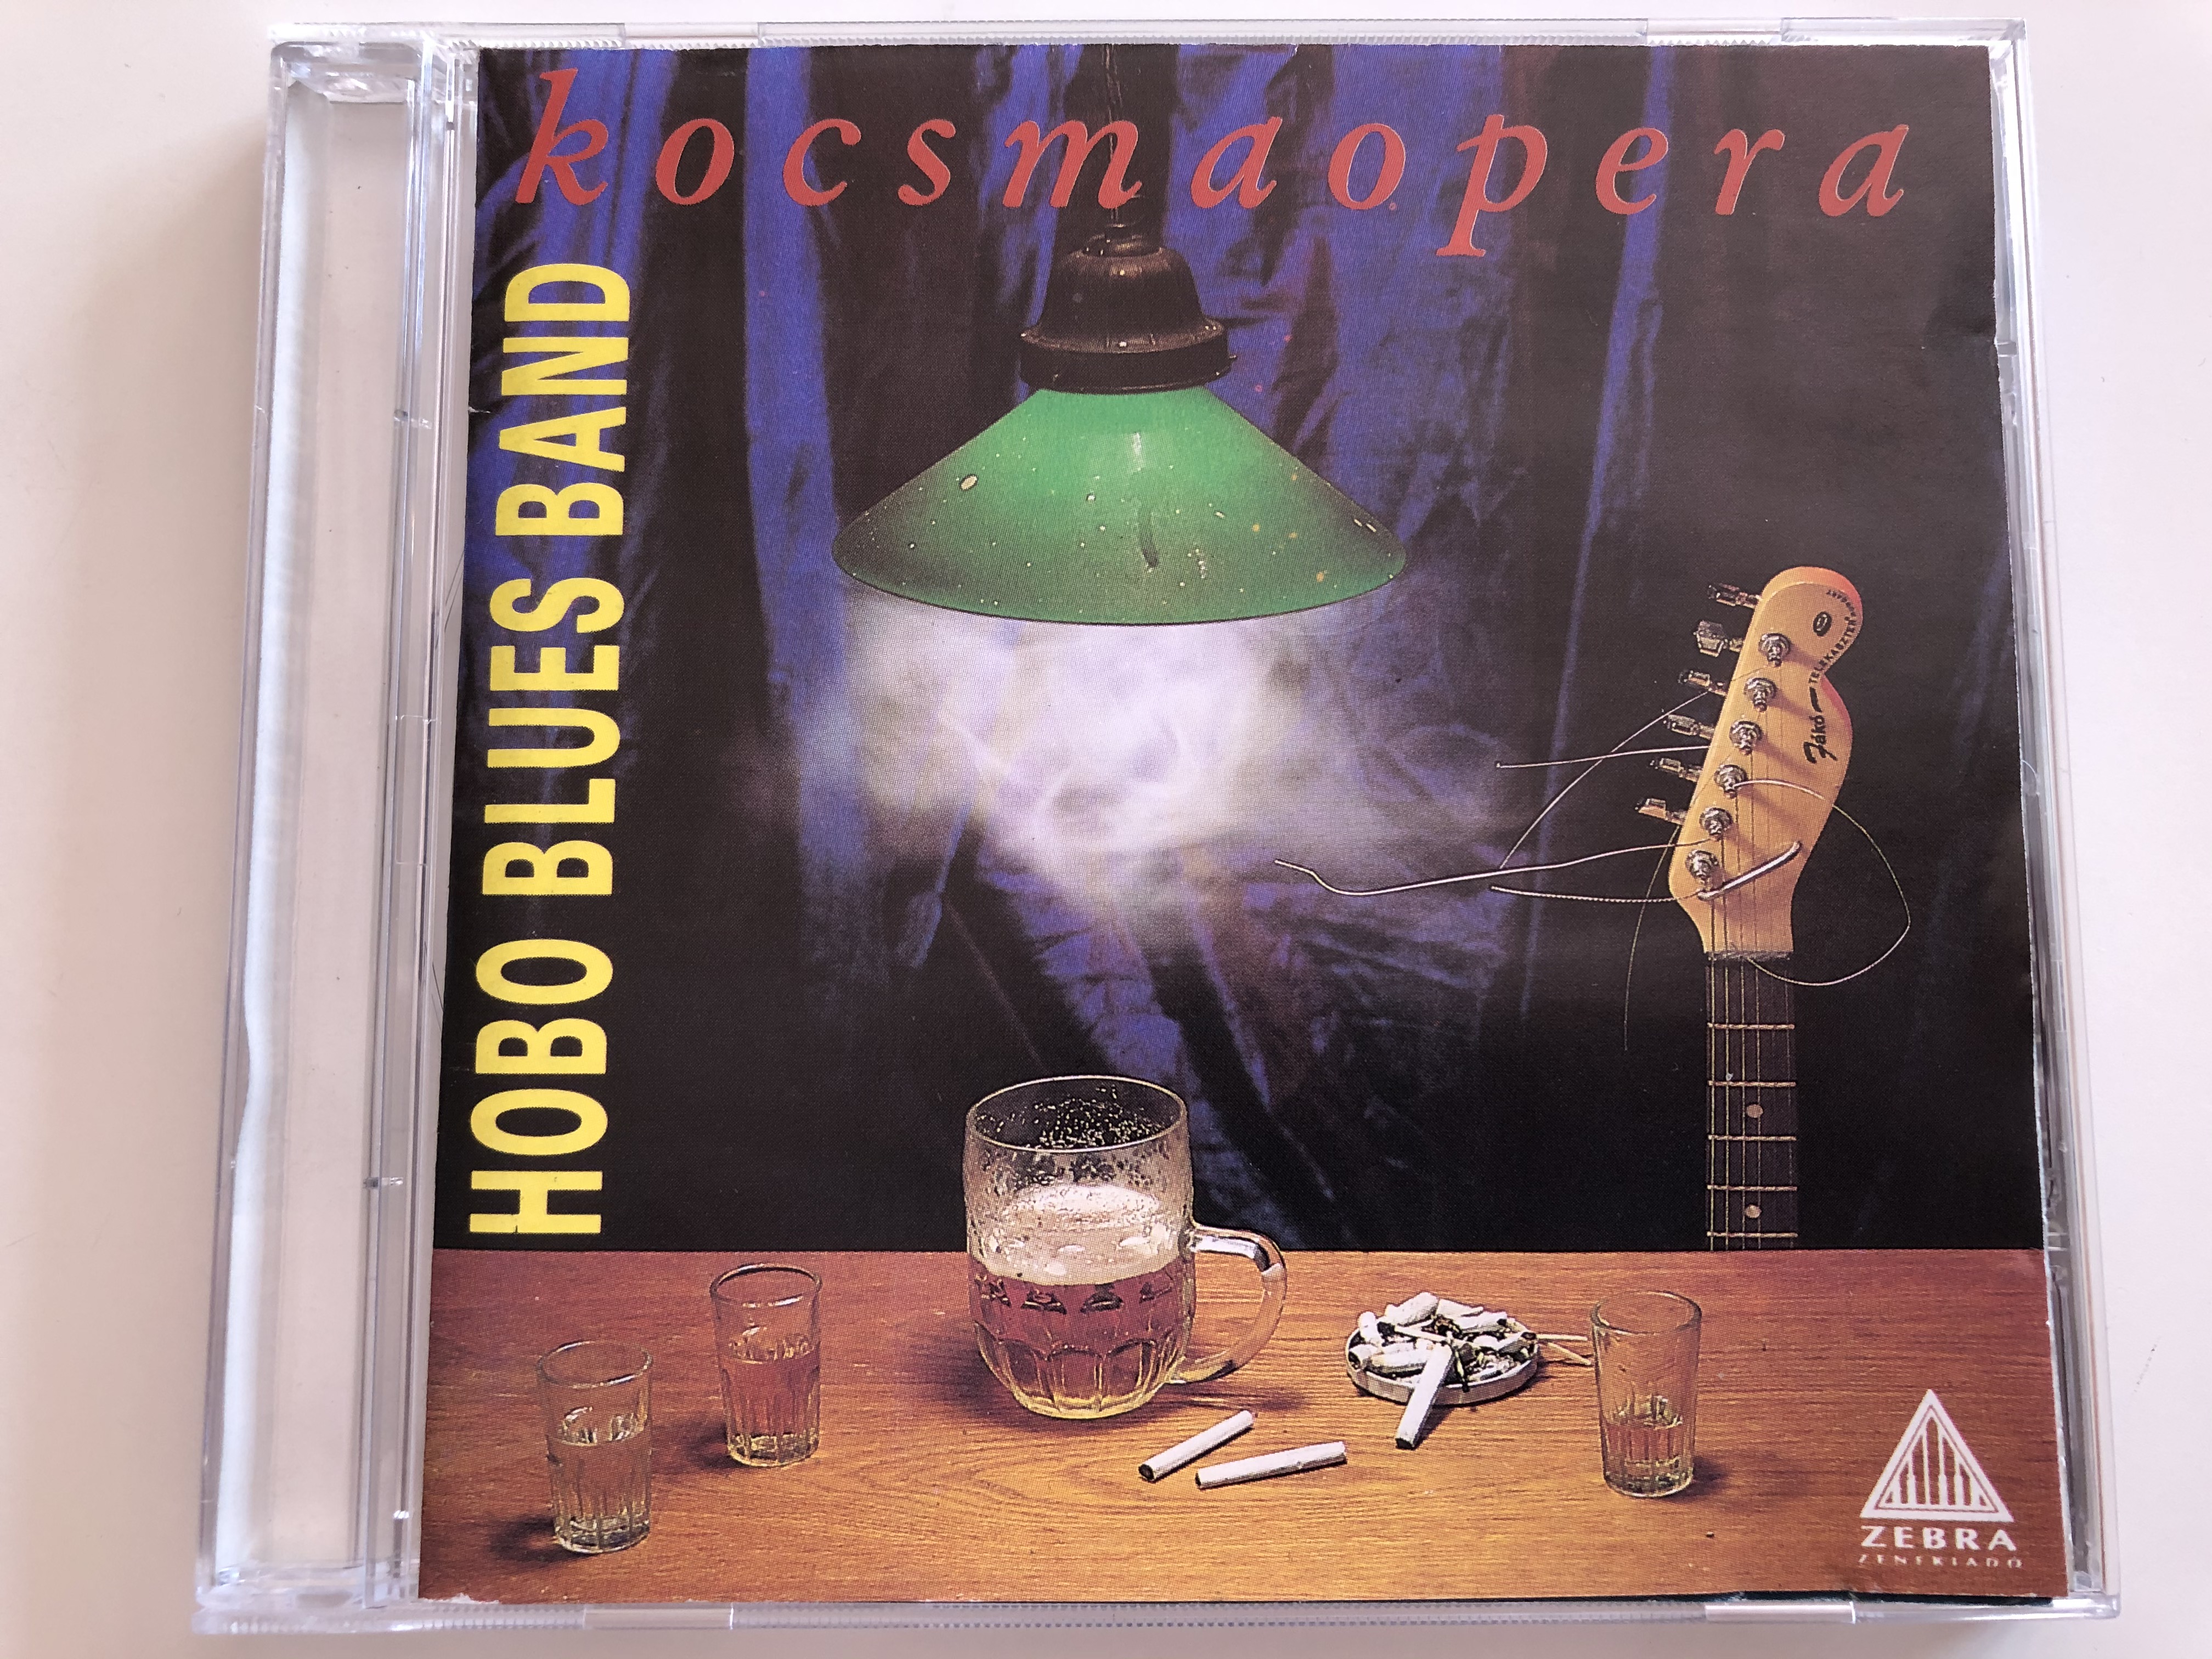 hobo-blues-band-kocsmaopera-zebra-audio-cd-1991-1-.jpg